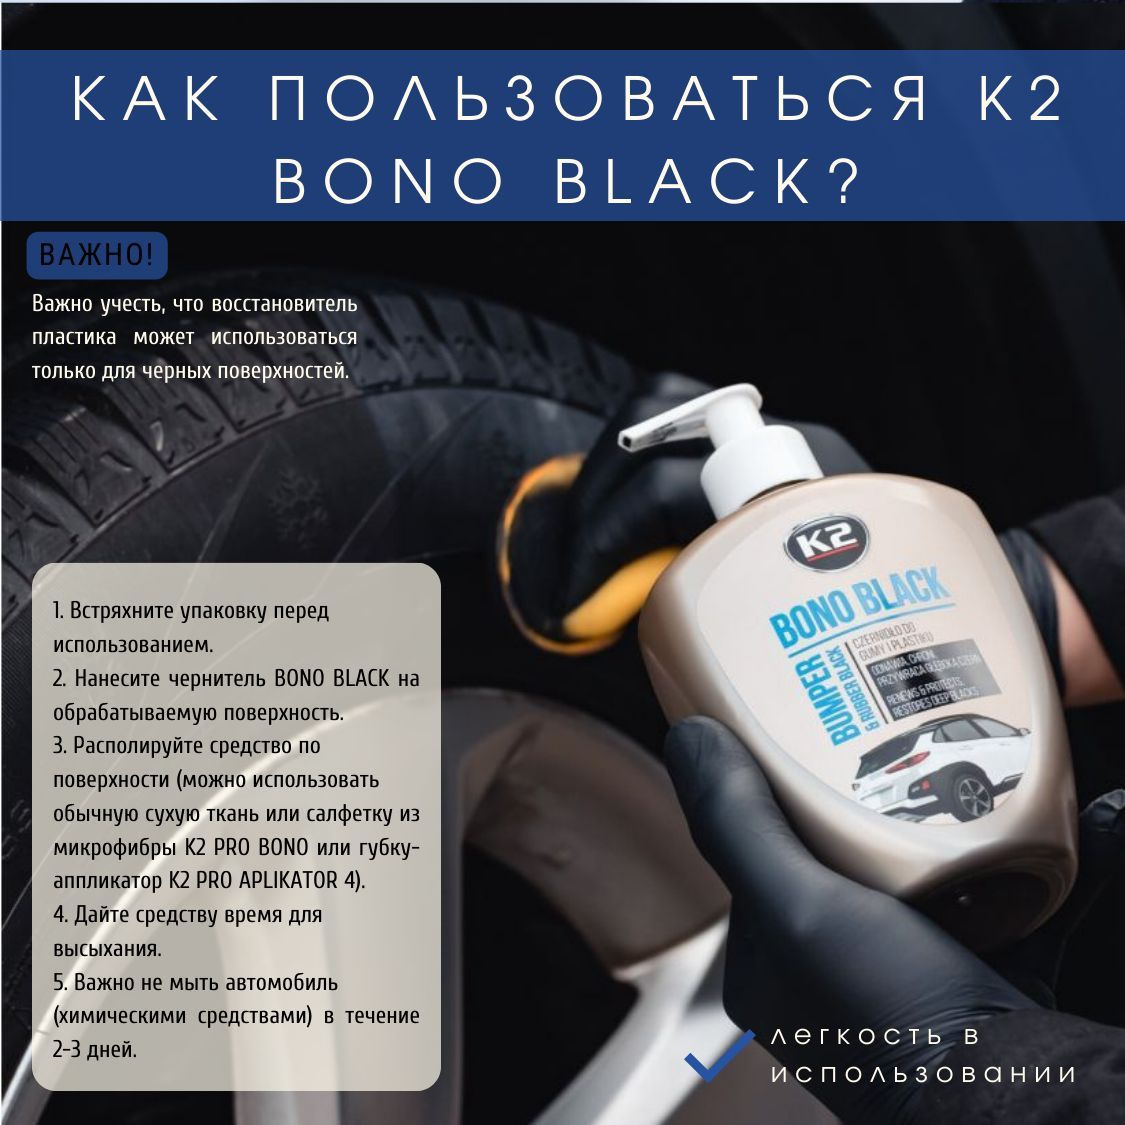 1. Встряхните упаковку перед использованием. 2. Нанесите чернитель K2 BONO BLACK на обрабатываемую поверхность. 3. Располируйте средство по поверхности (можно использовать обычную сухую ткань или салфетку из микрофибры K2 PRO BONO или губку-аппликатор K2 PRO APLIKATOR 4). 4. Дайте чернителю пластика и резины время для высыхания. 5. Важно не мыть автомобиль (химическими средствами) в течение 2-3 дней.